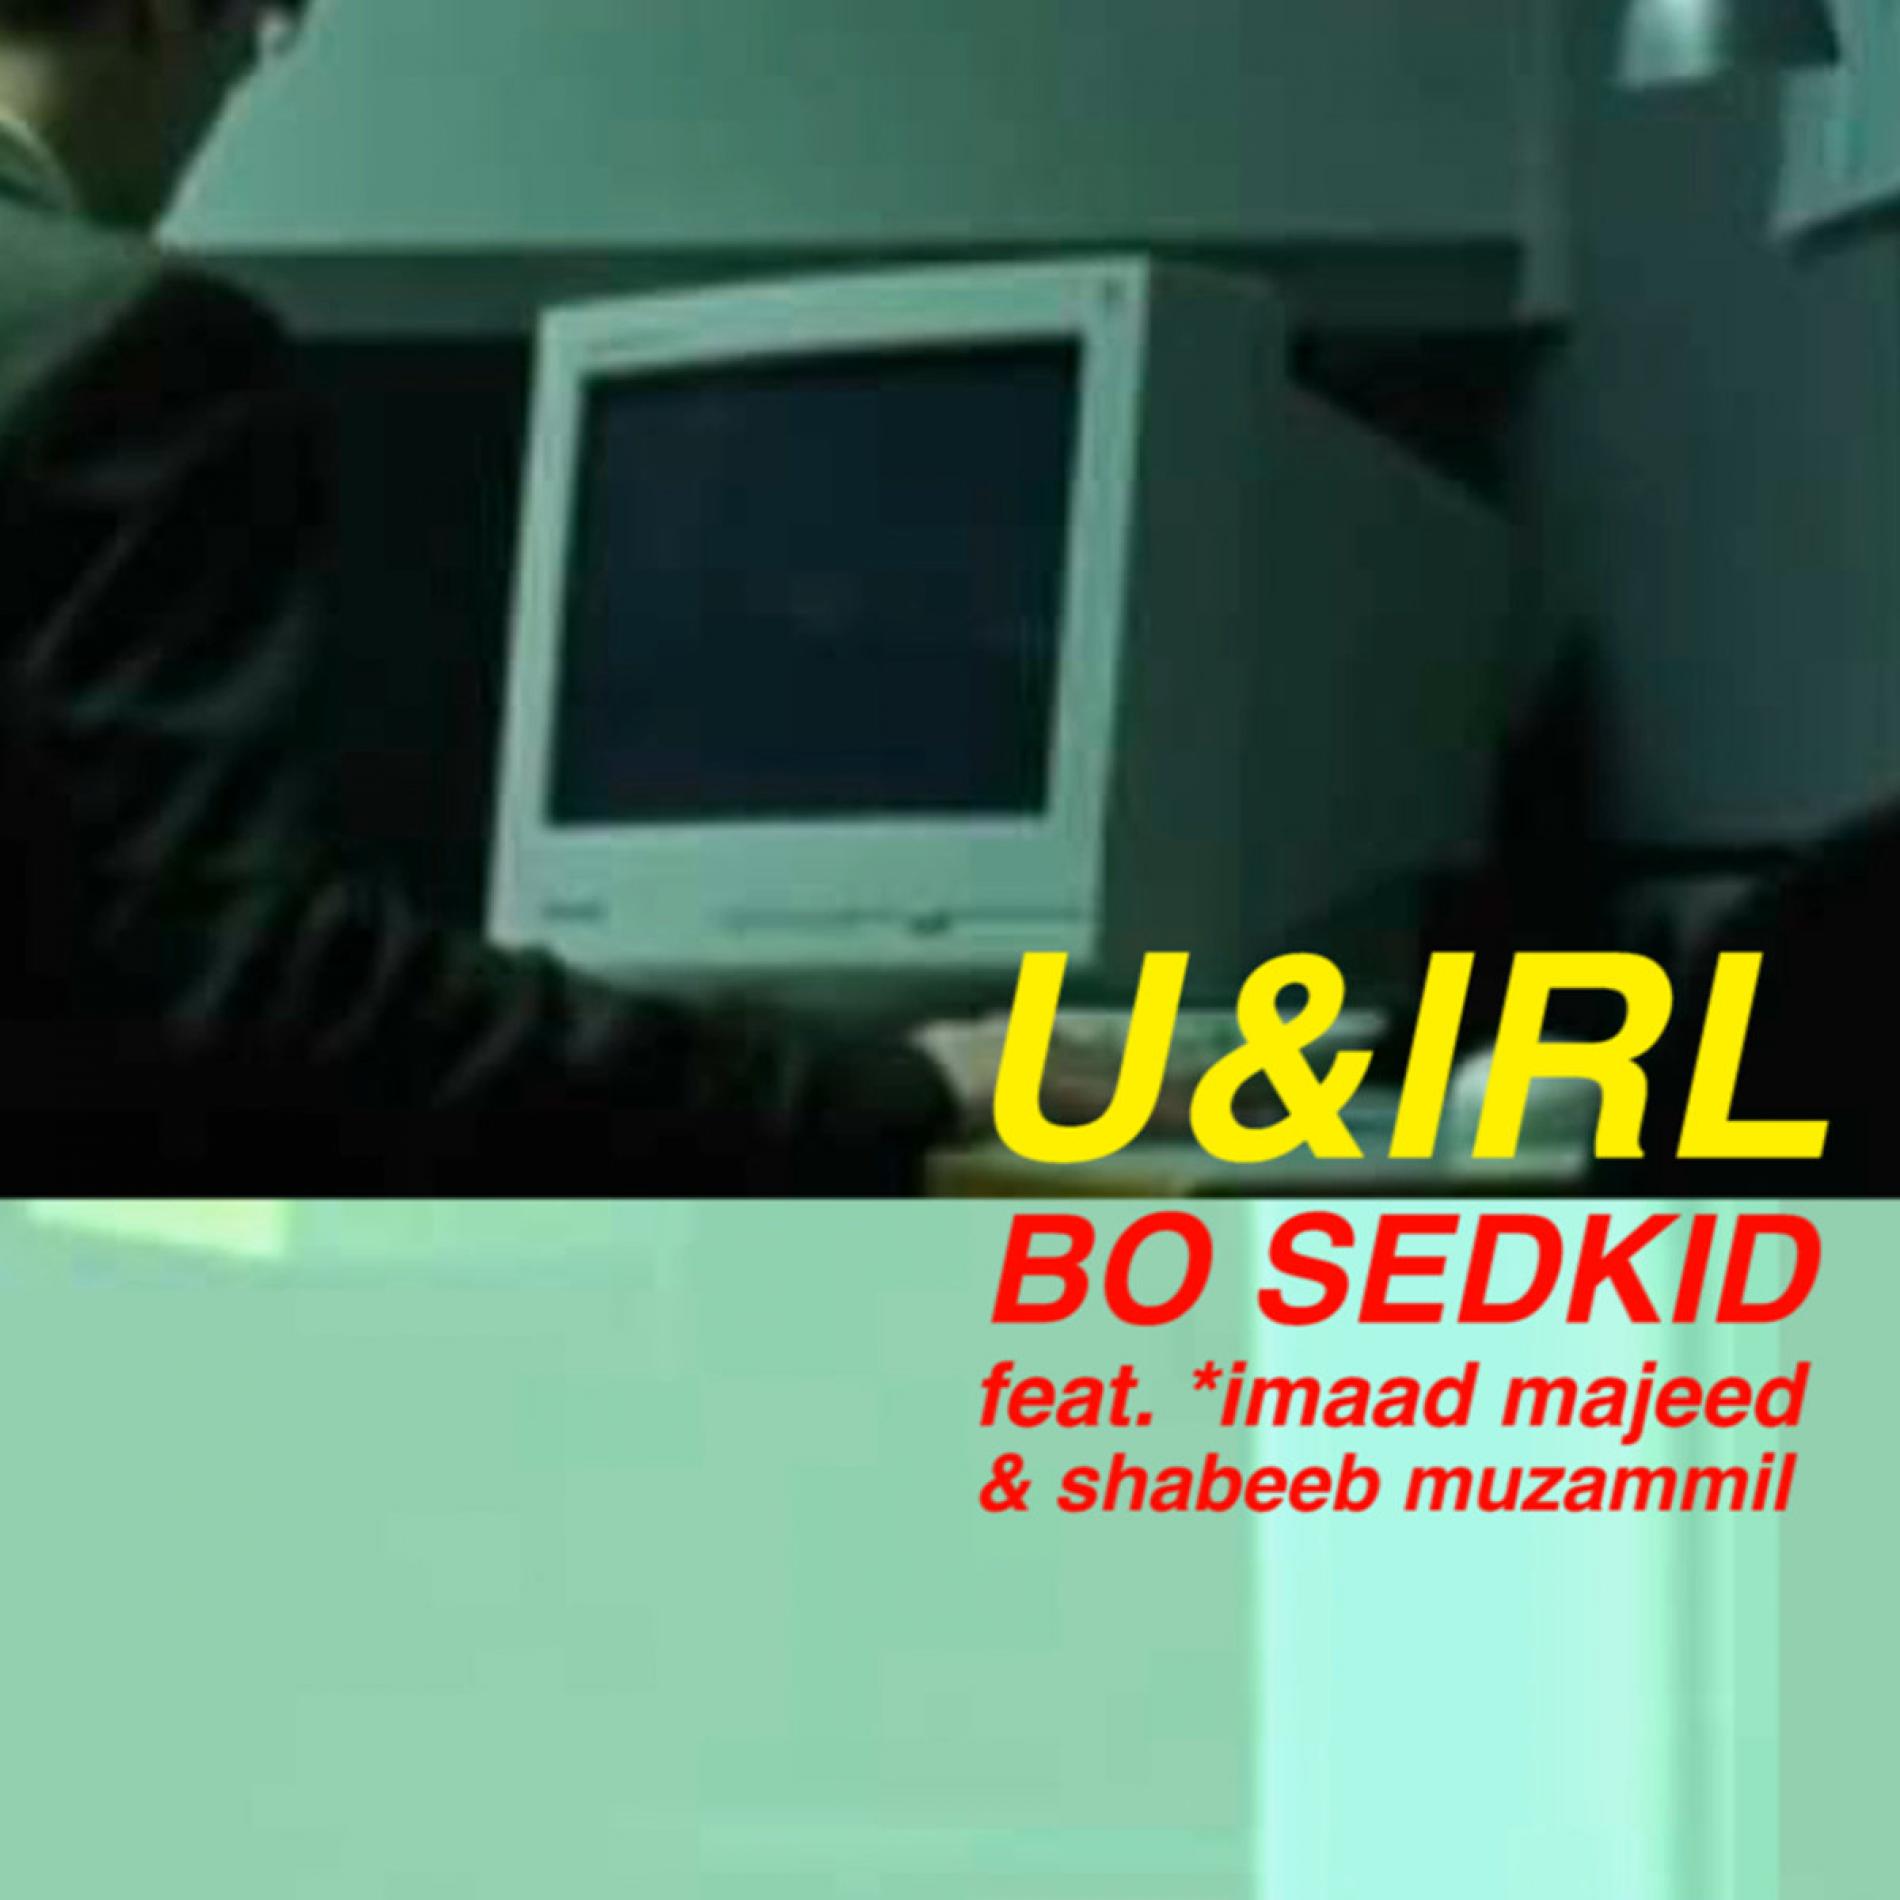 Bo Sedkid Ft *imaad majeed & Shabeeb Muzammil – U & IRL